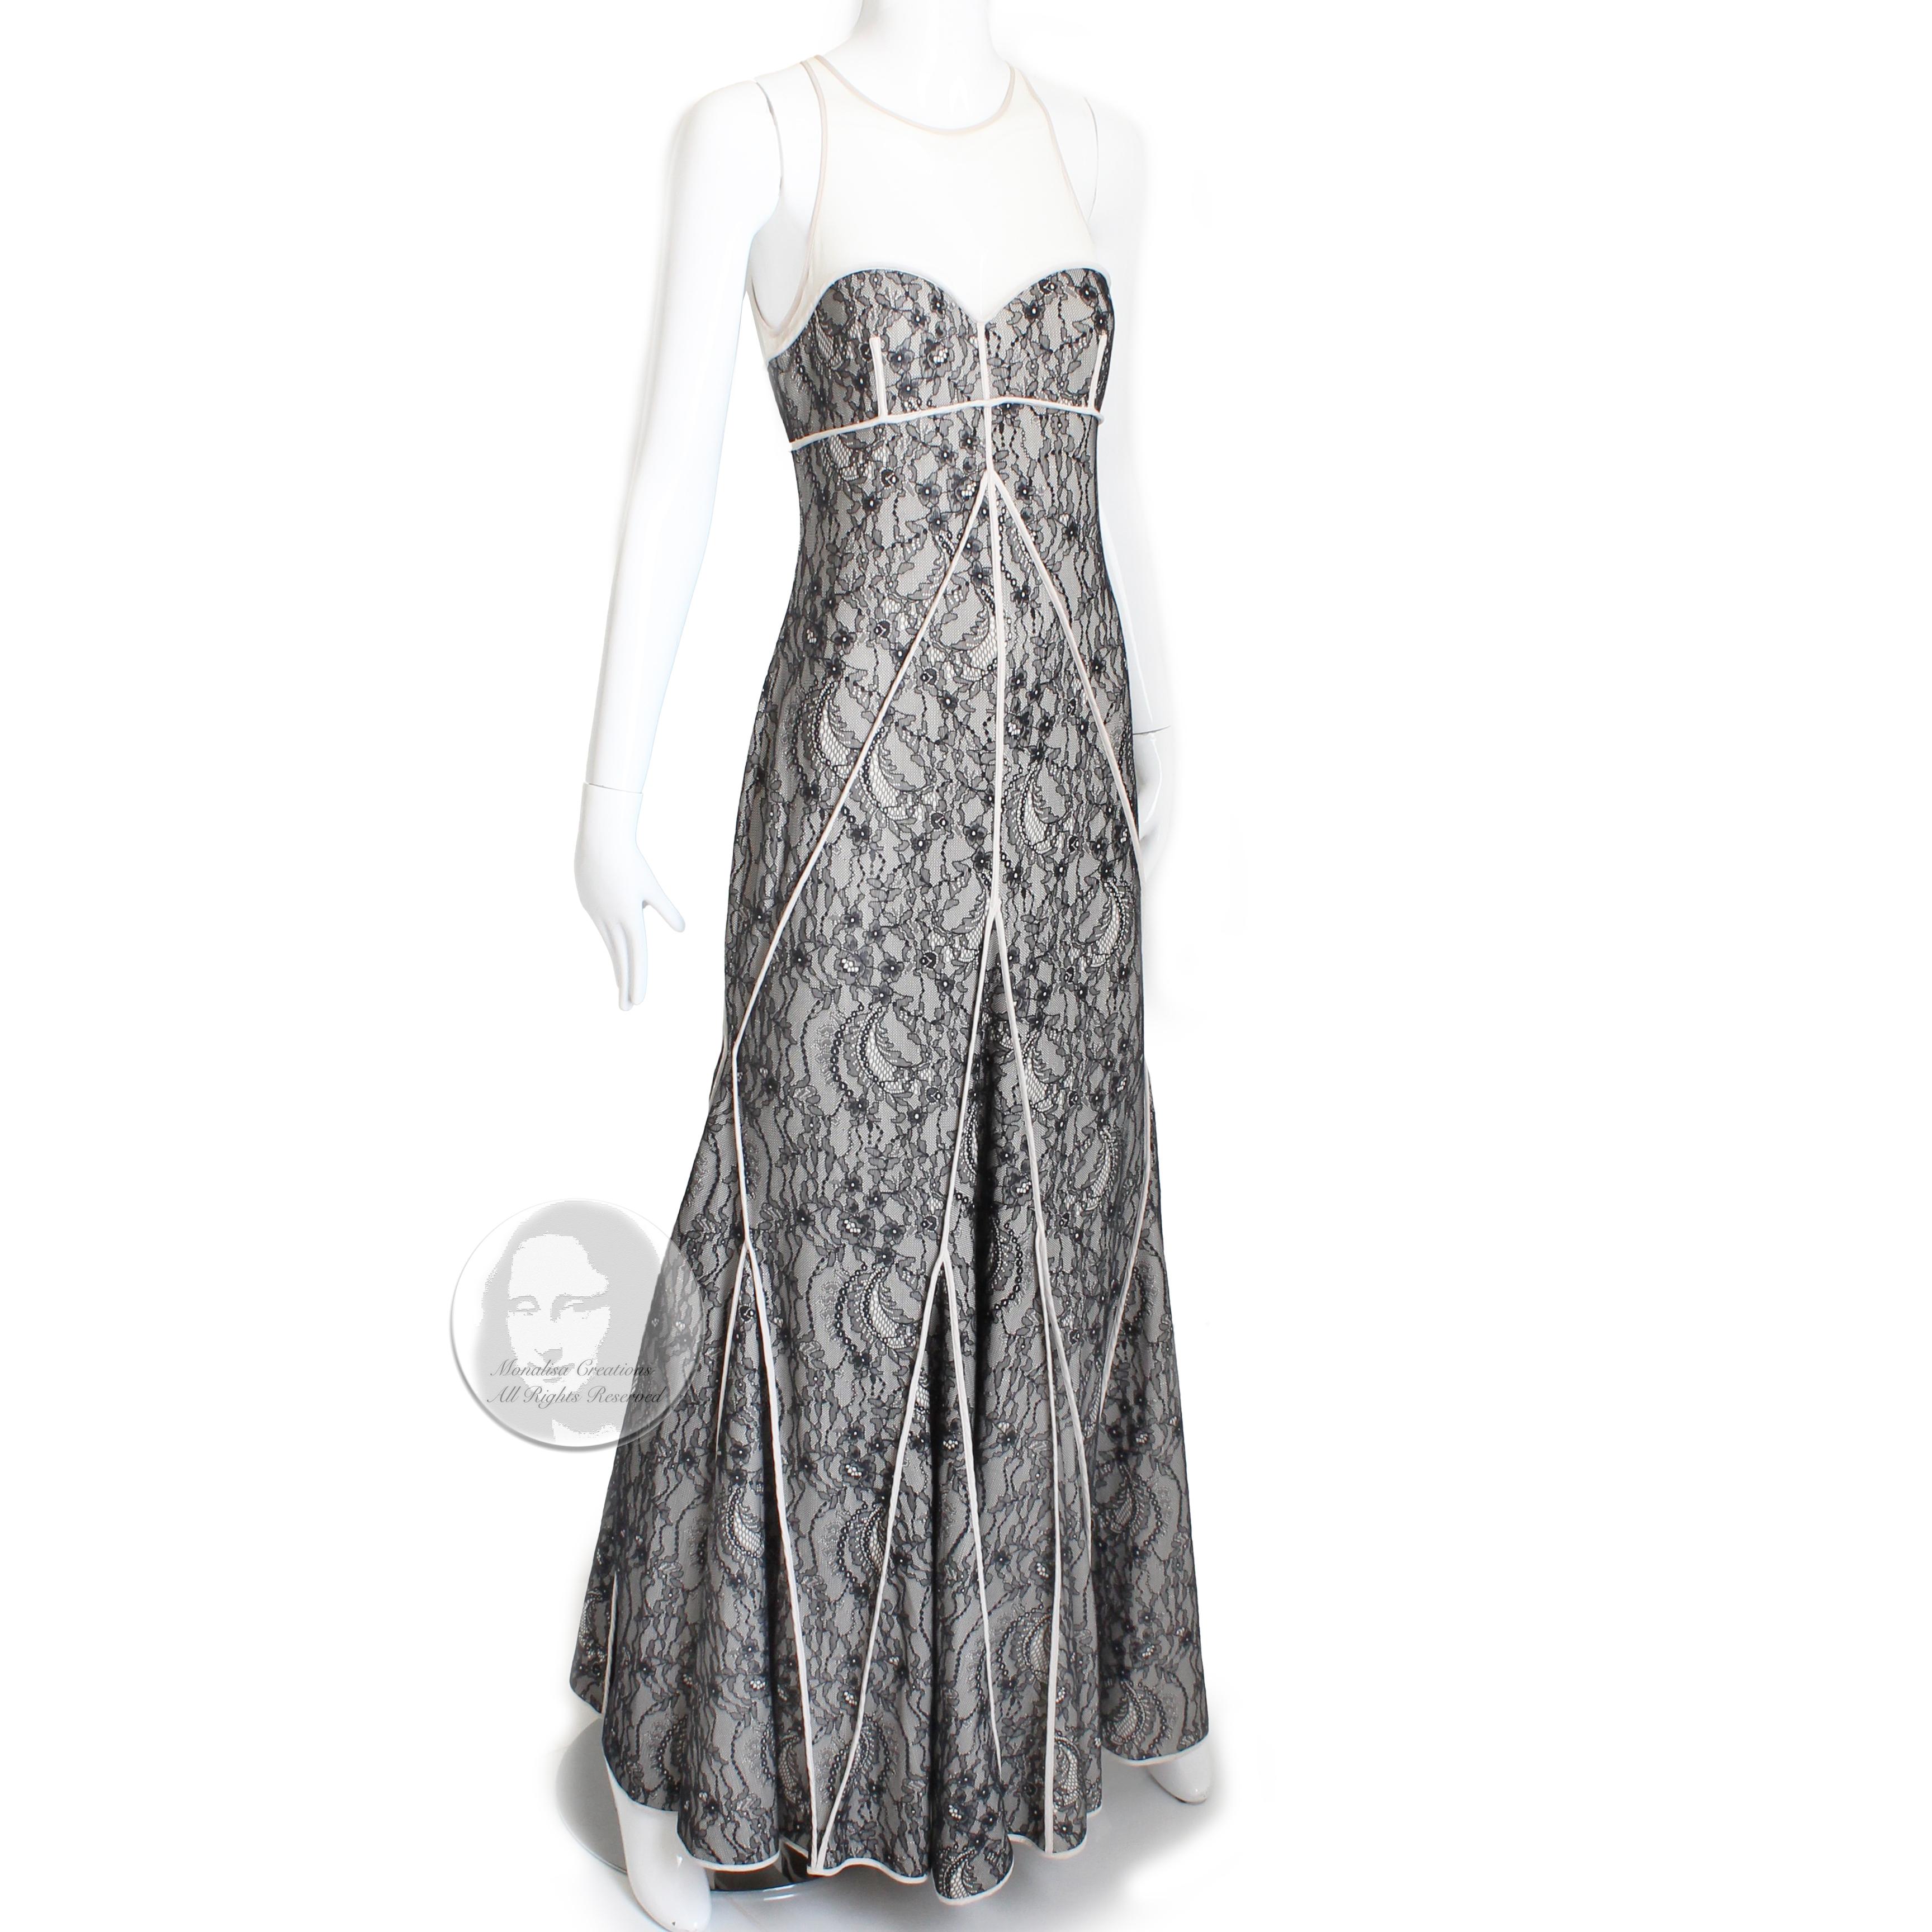 Authentique robe longue ou robe de soirée Halston Heritage, probablement fabriquée après 2010. 

Réalisée en dentelle illusion noire et ivoire, elle présente un buste en cœur, un décolleté et un dos transparents avec fermeture éclair, ainsi qu'une